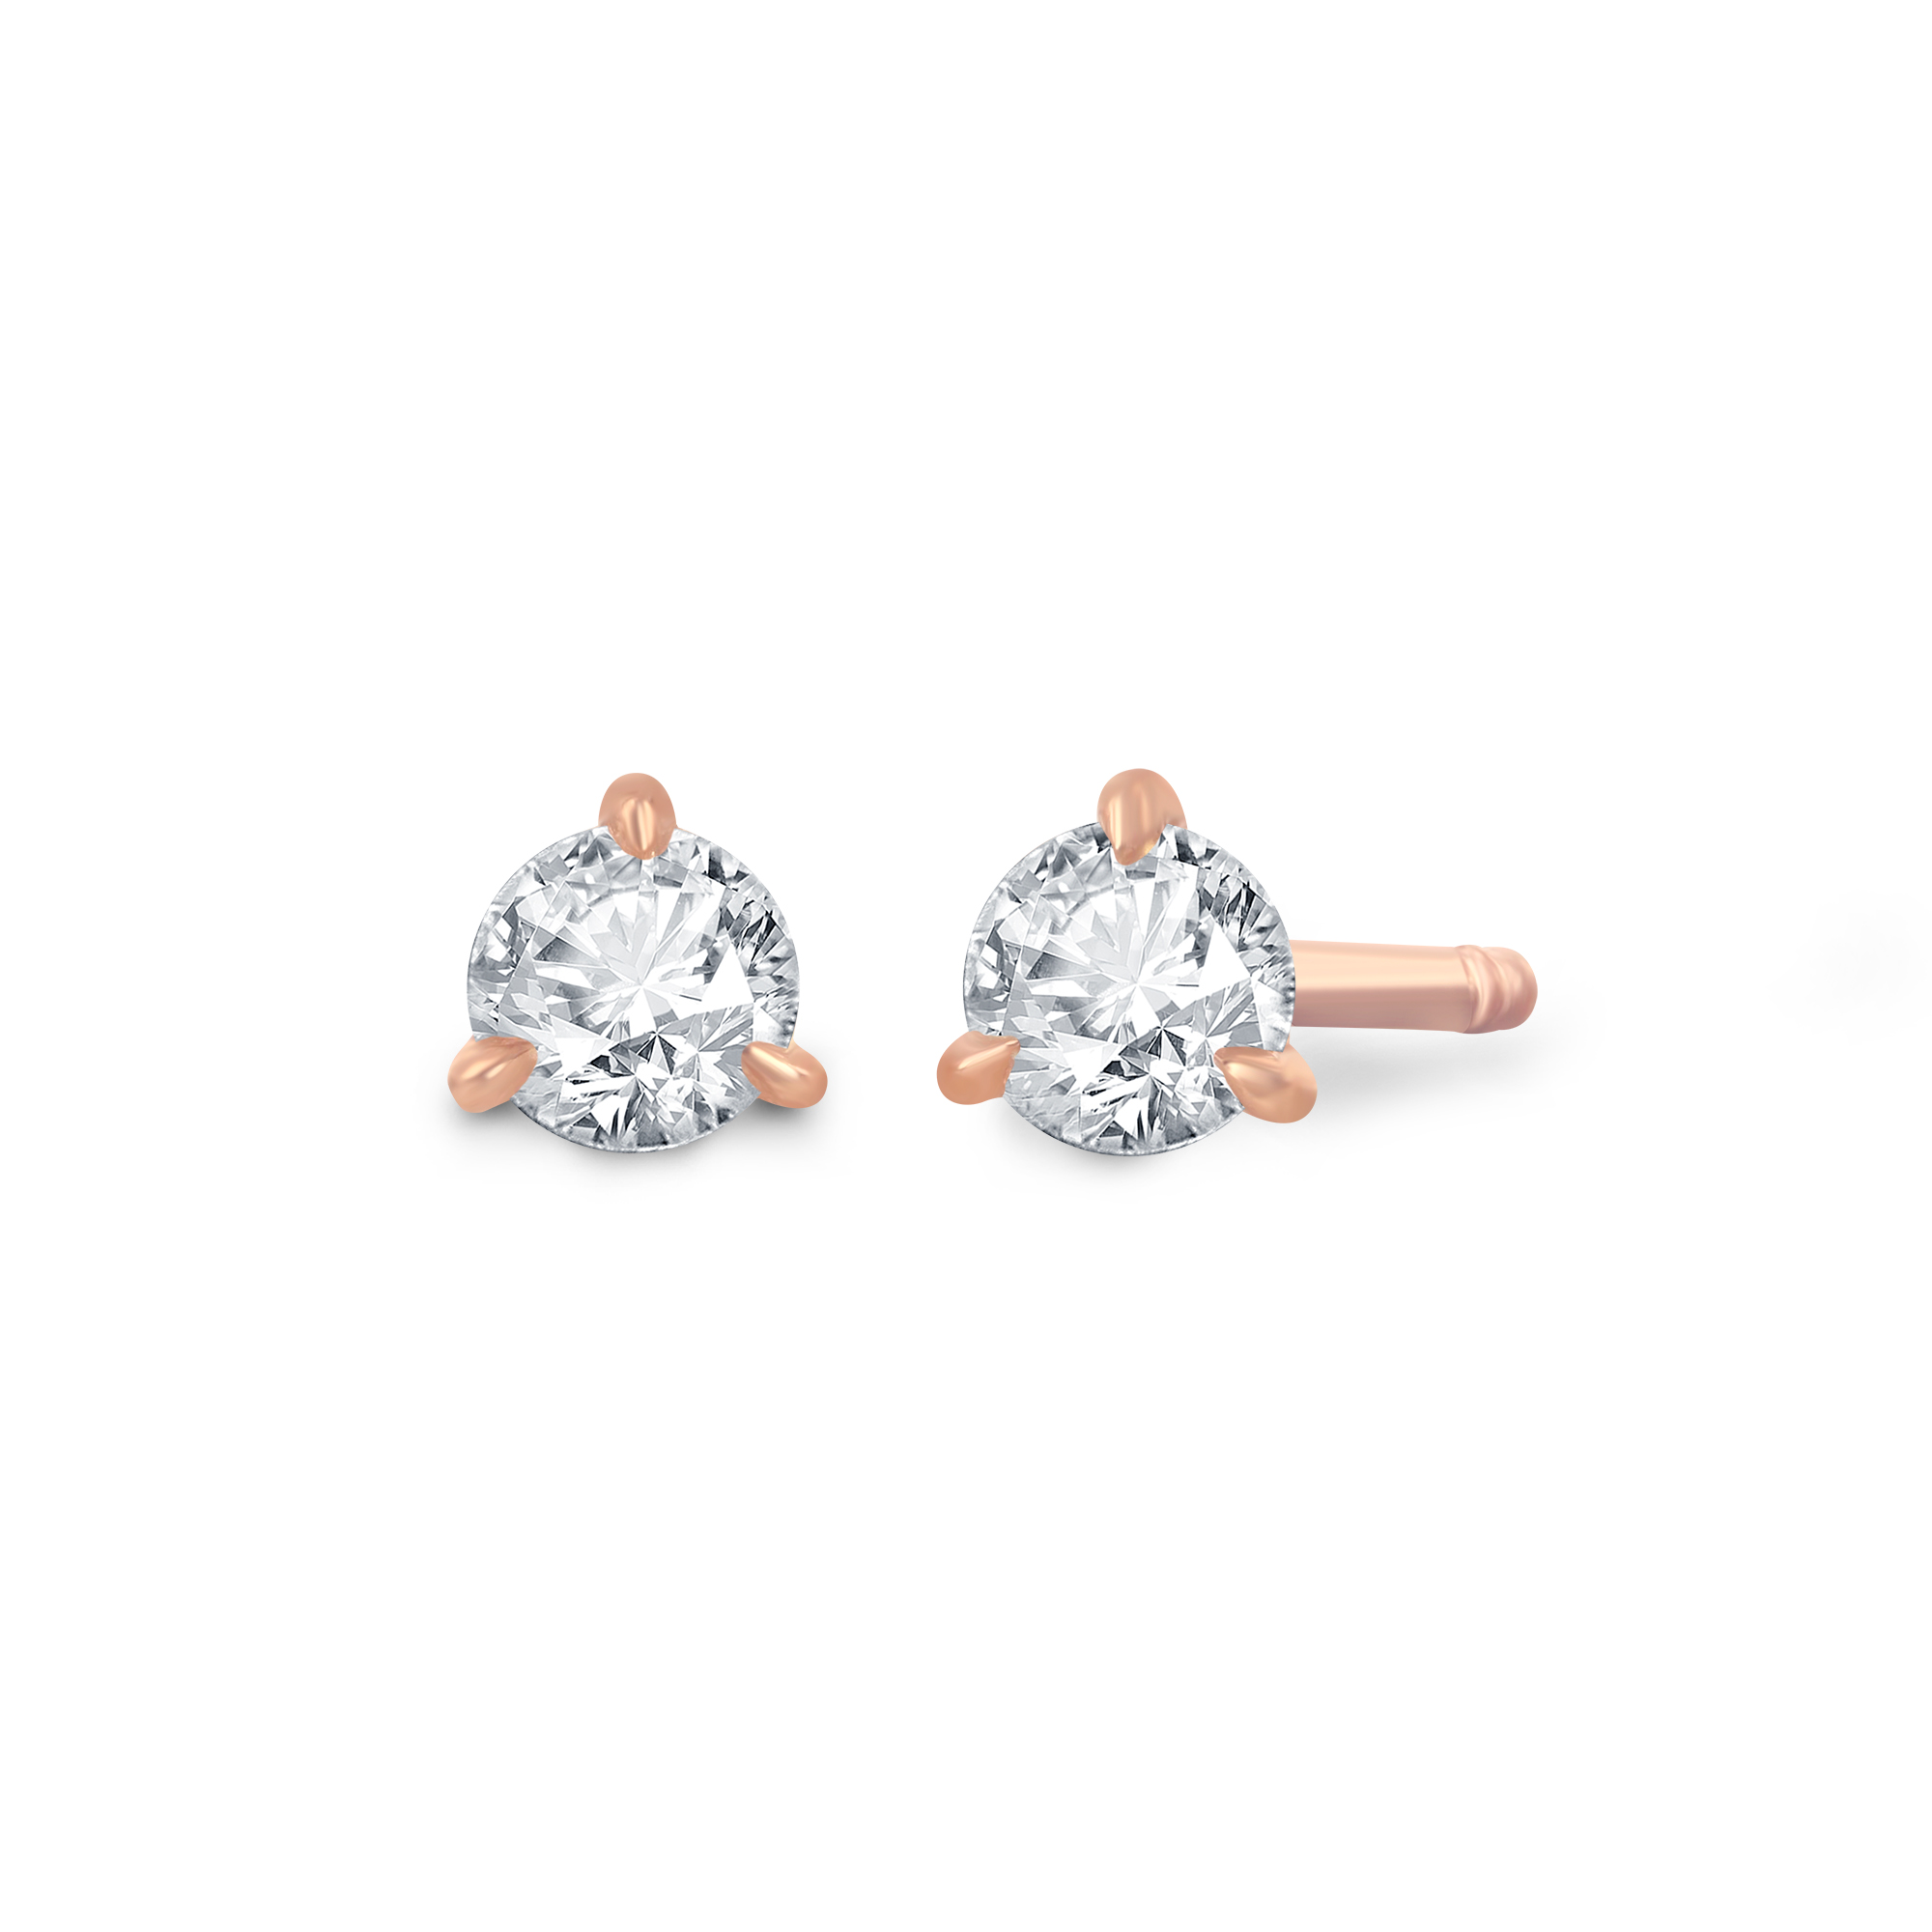 Rhodes — Susie Saltzman | Luxury Engagement Rings & Custom Jewelry